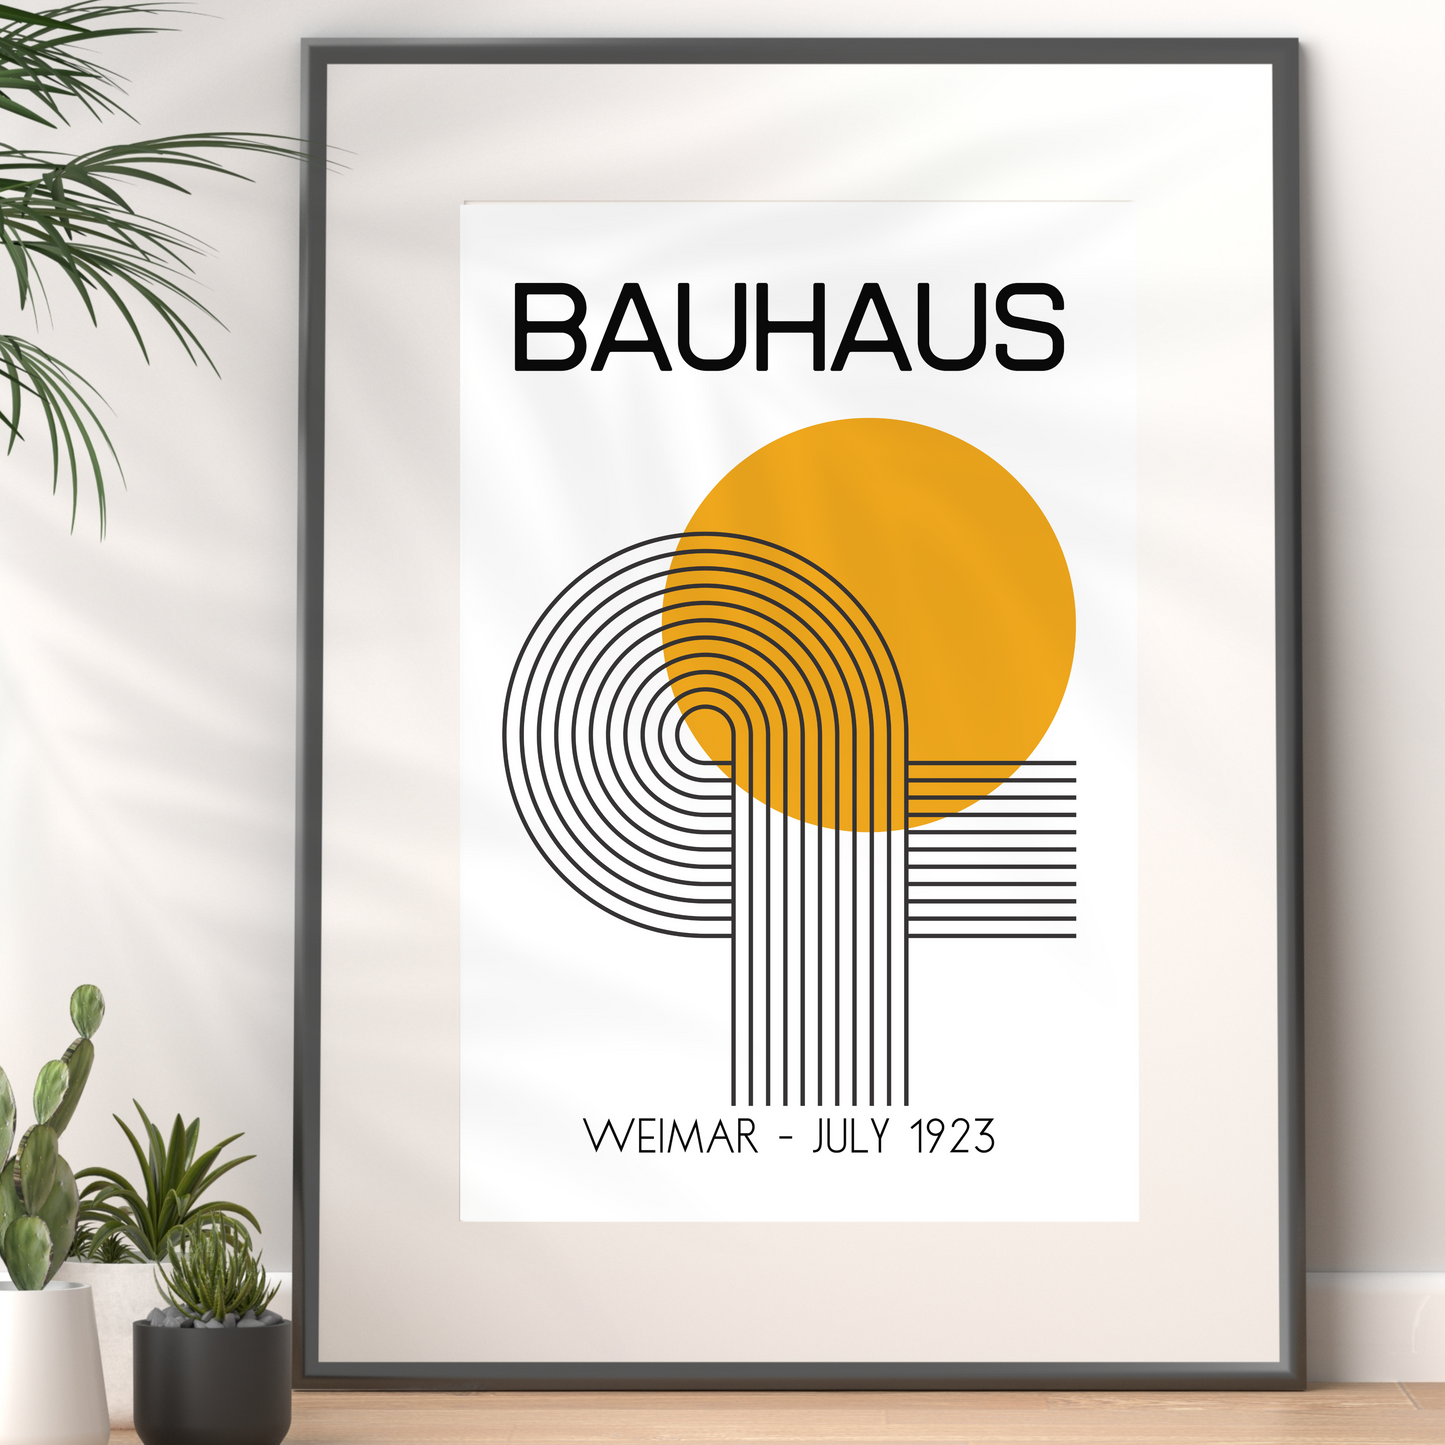 Bauhaus Exhibition, Yellow & Black, Art Print, A3/A4/A5 Sizes